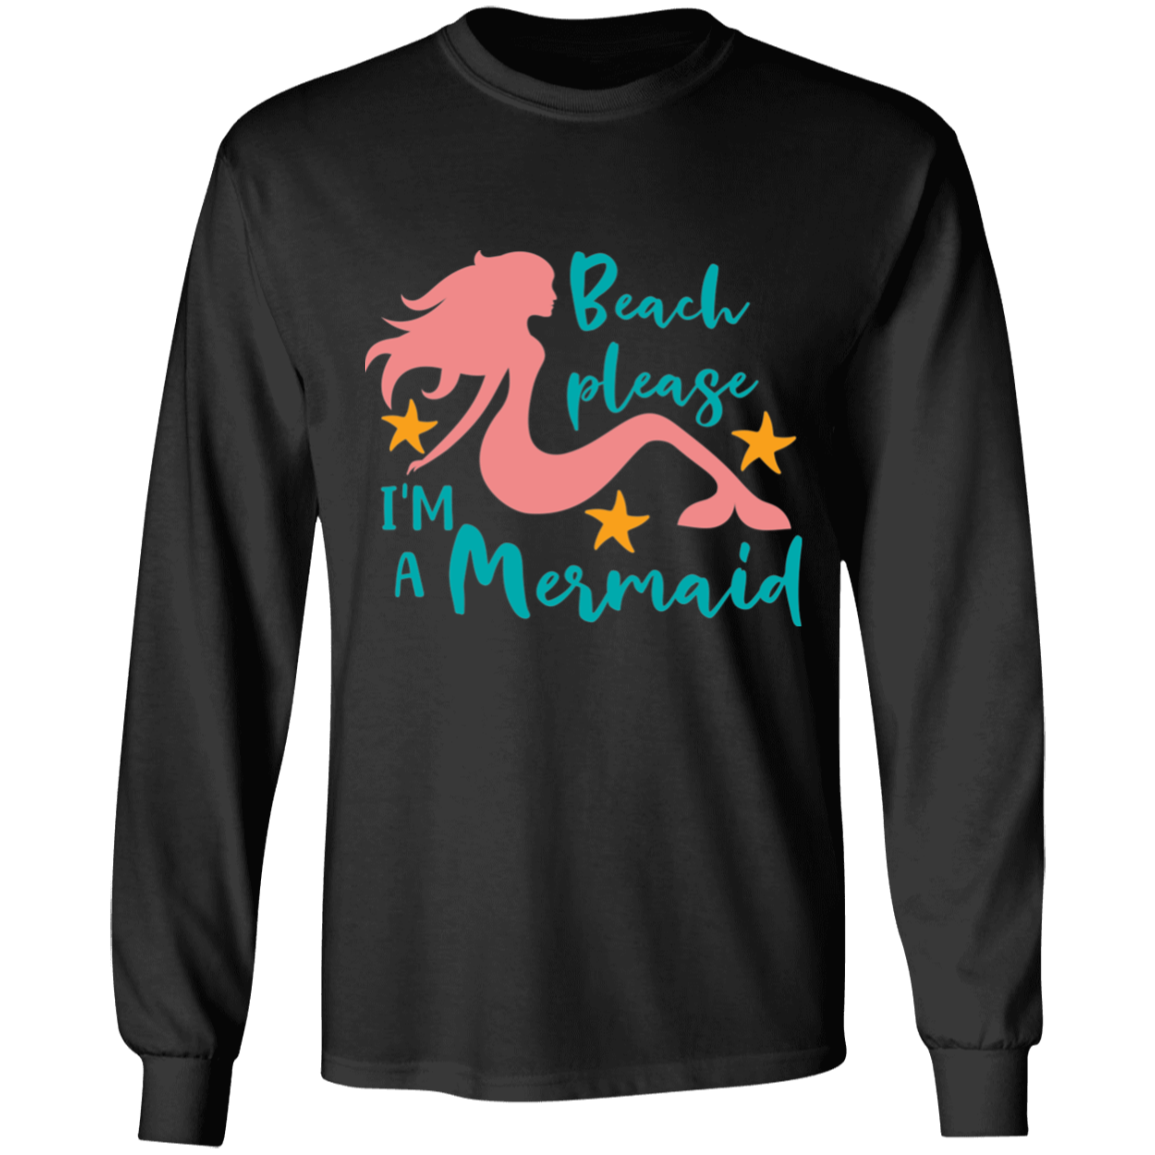 Mermaid long sleeve t'shirt